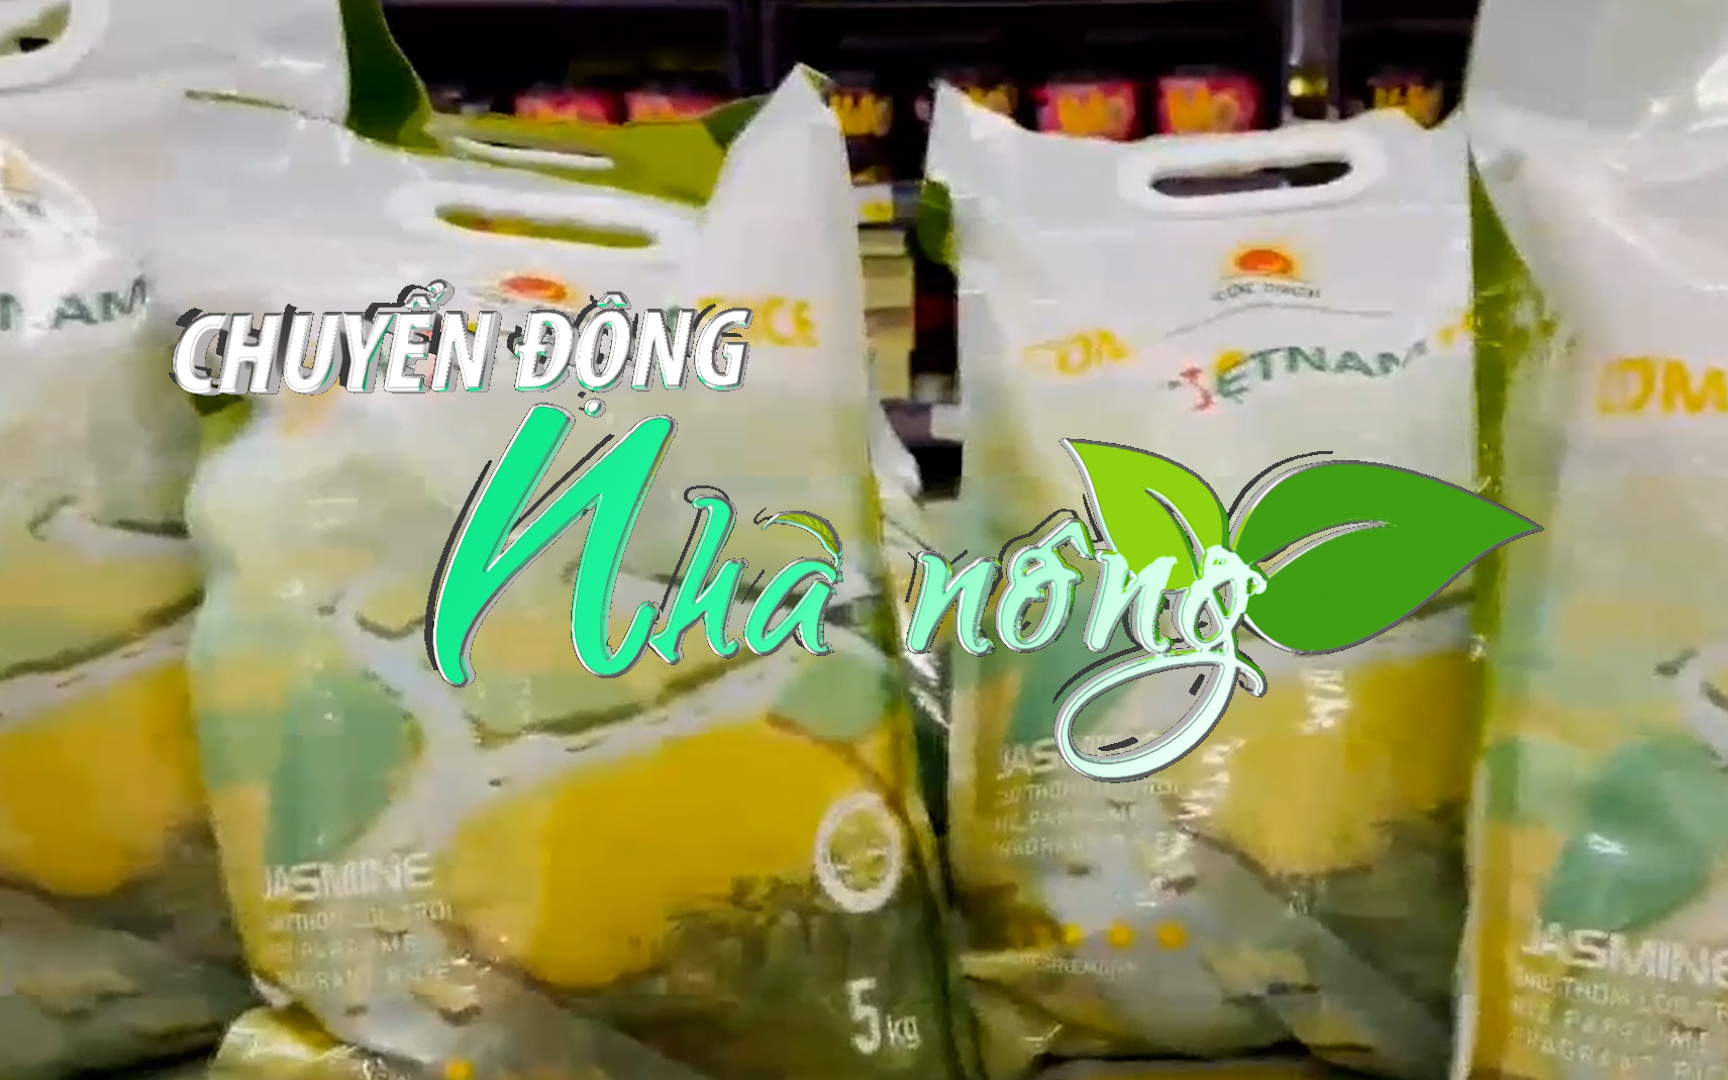 Chuyển động Nhà nông 4/9: Gạo Việt Nam lần đầu lên kệ siêu thị E.Leclerc của Pháp